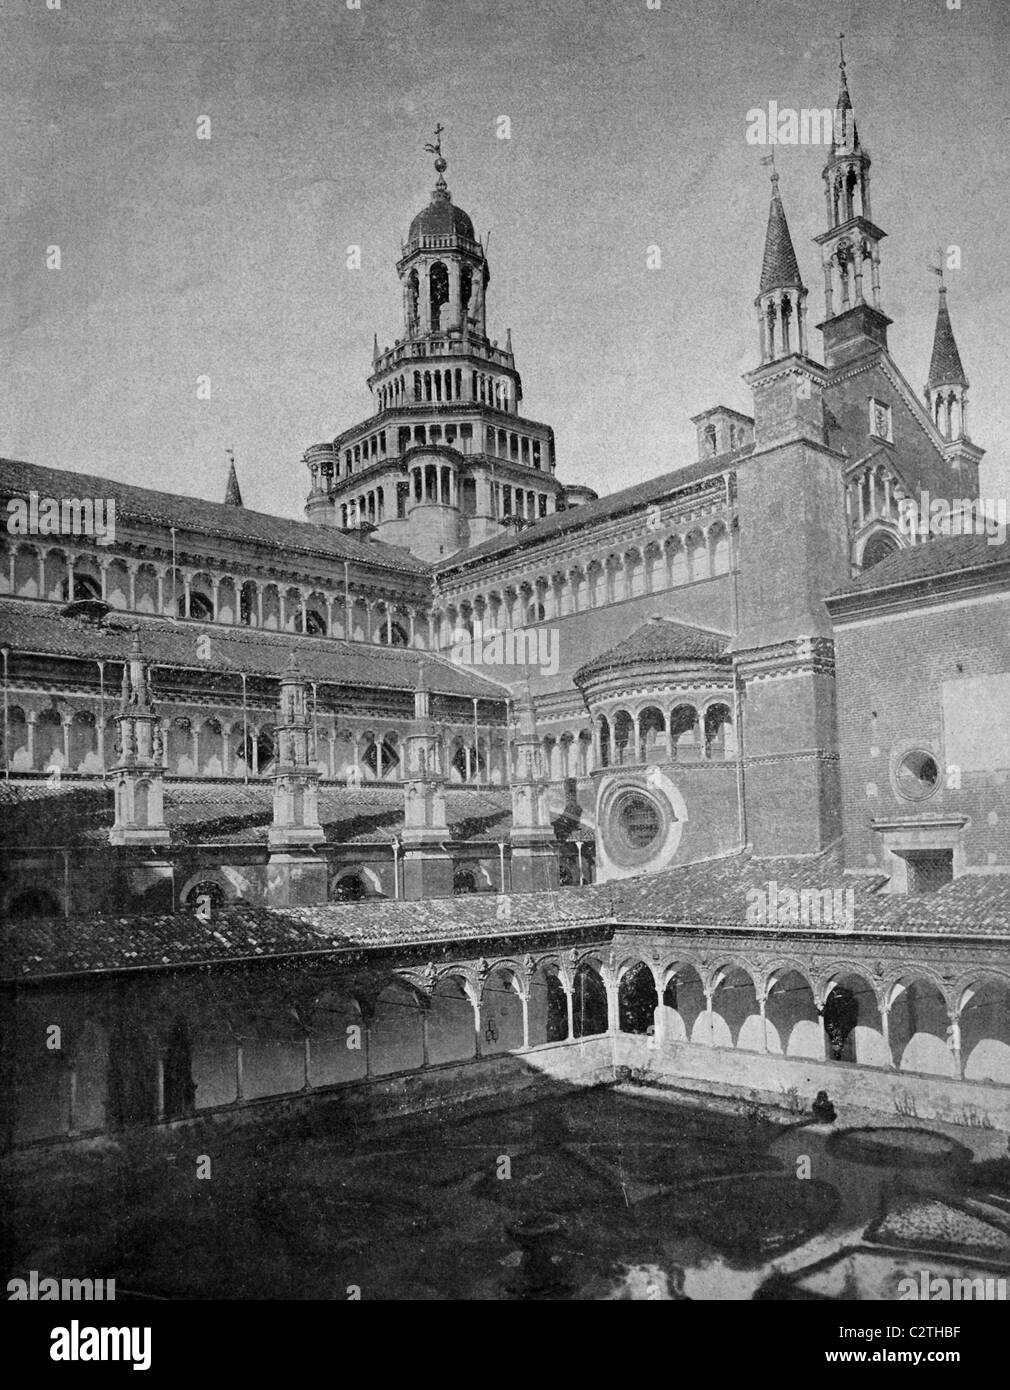 Inizio autotype la Certosa di Pavia Gra-Car monastero, Pavia, Italia, foto storiche, 1884 Foto Stock